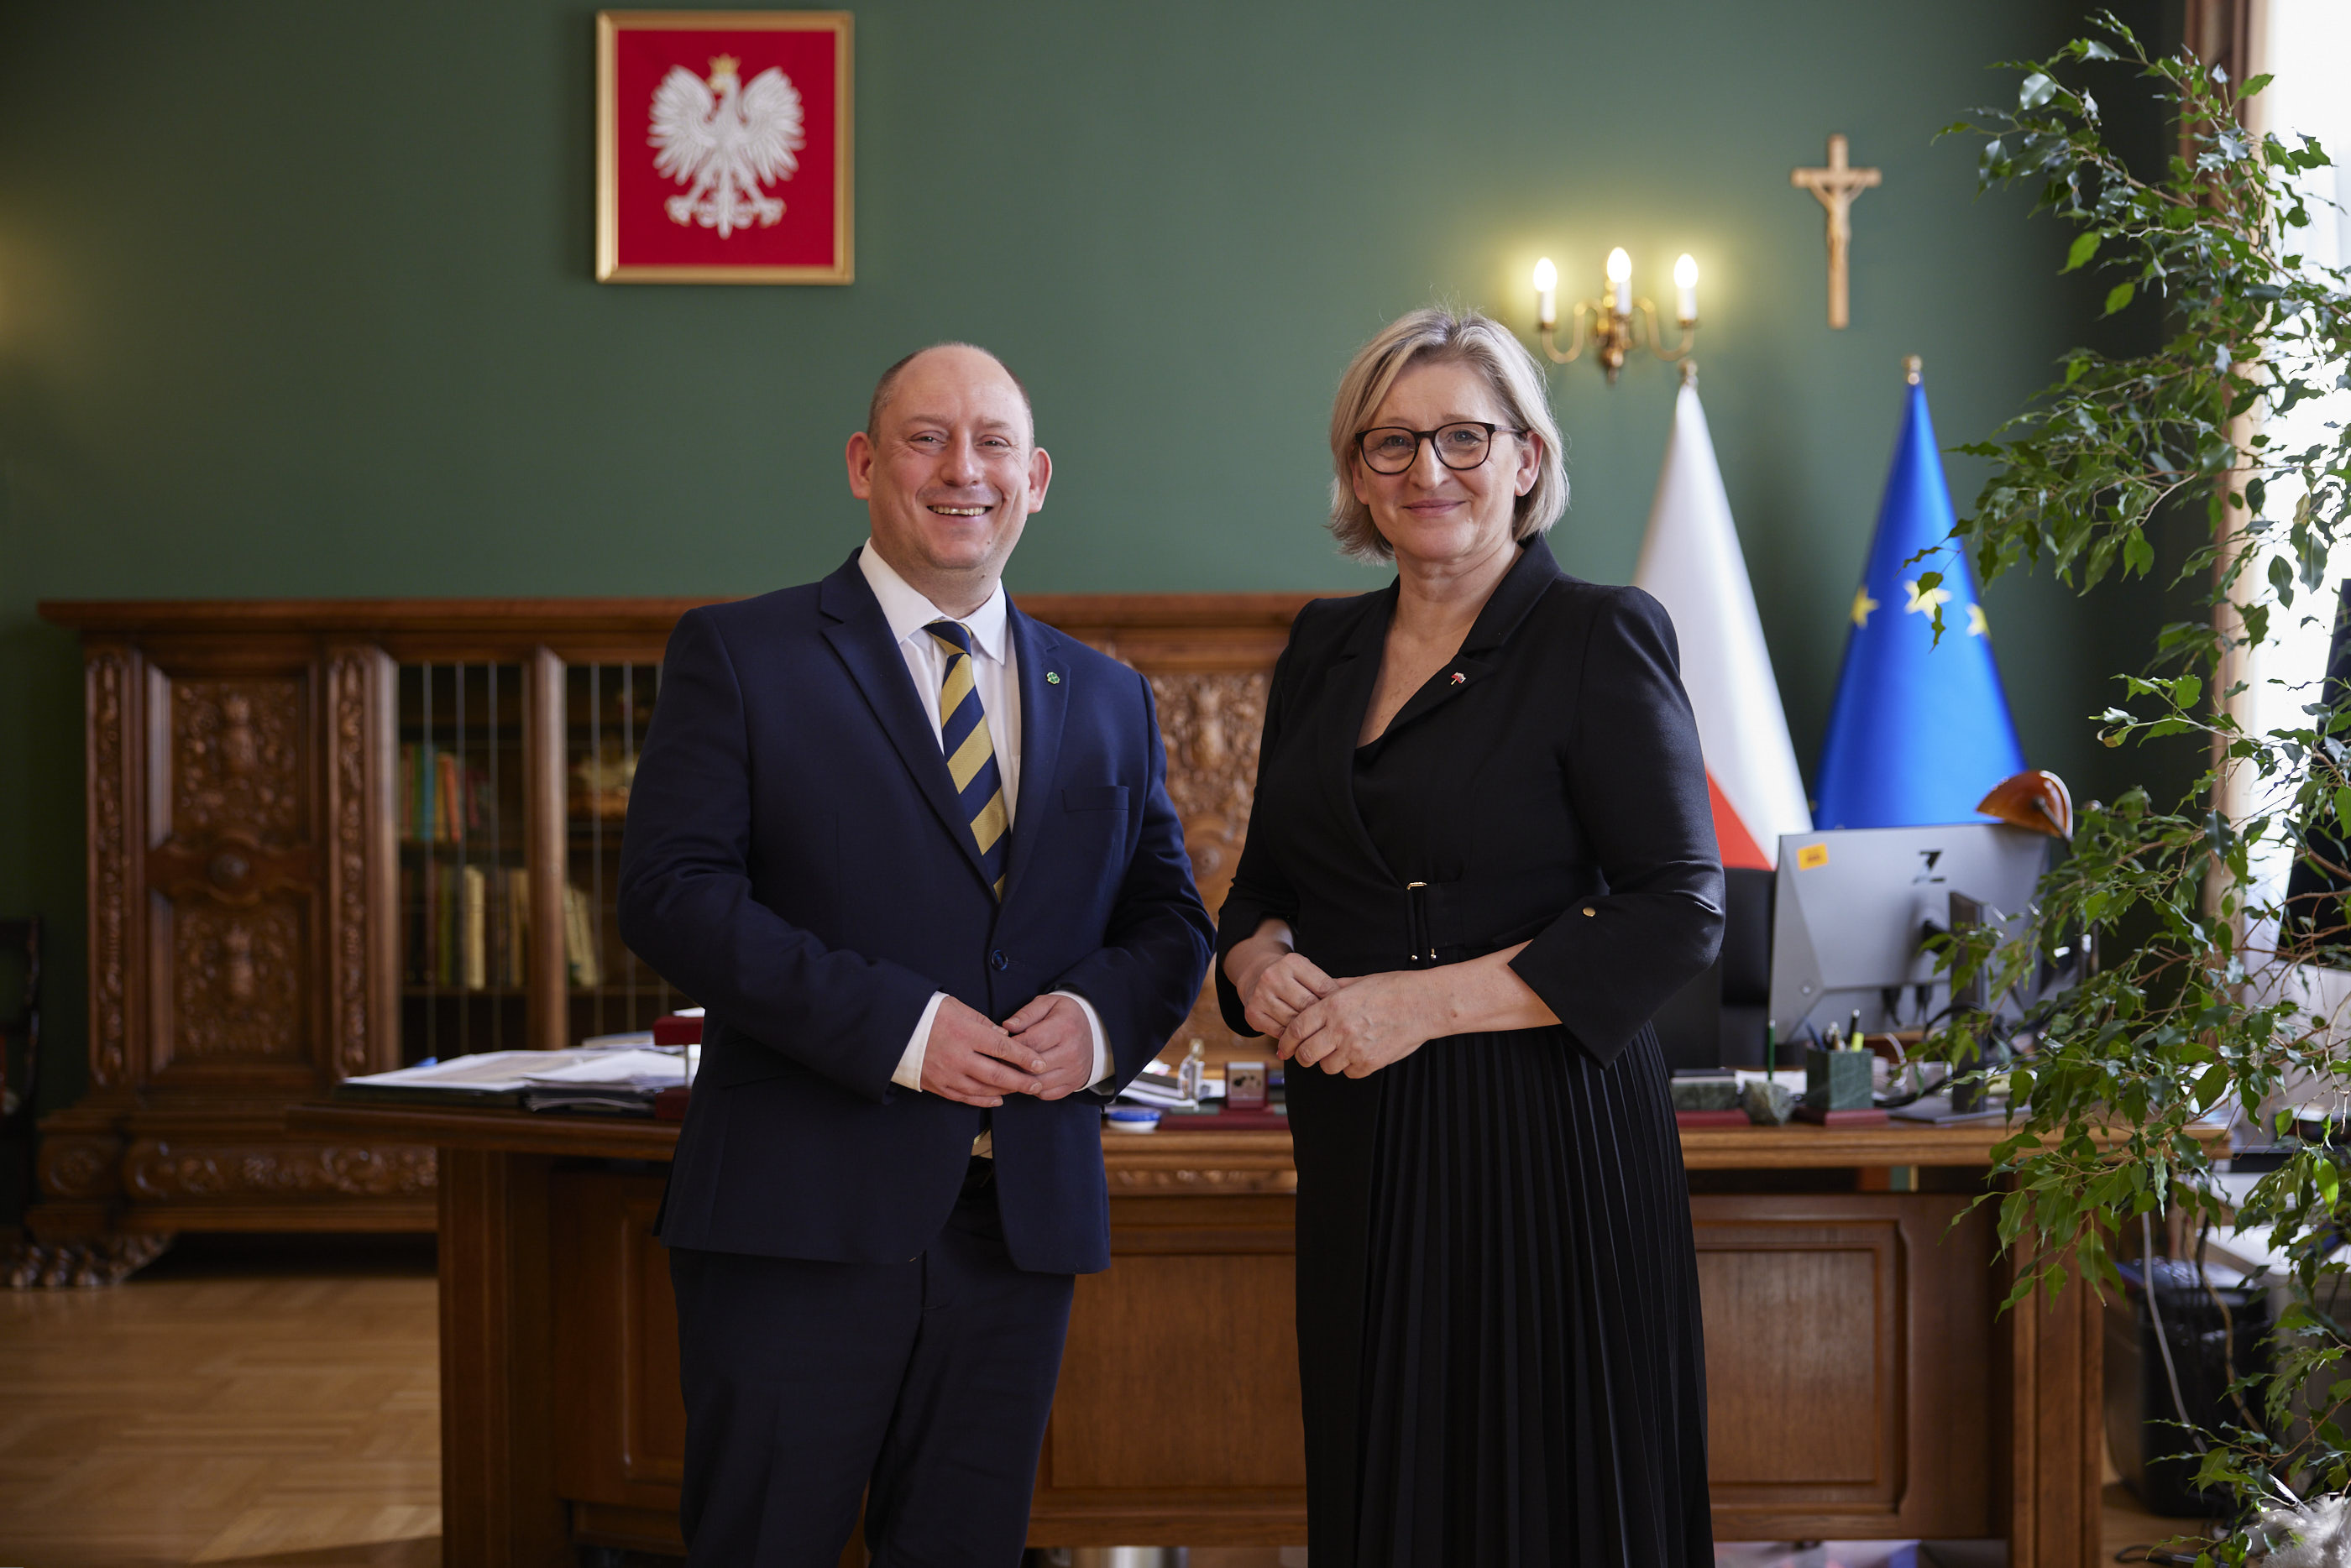 Spotkanie kurtuazyjne konsul Słowacji z wojewodą małopolskim Krzysztofem Janem Klęczarem. 